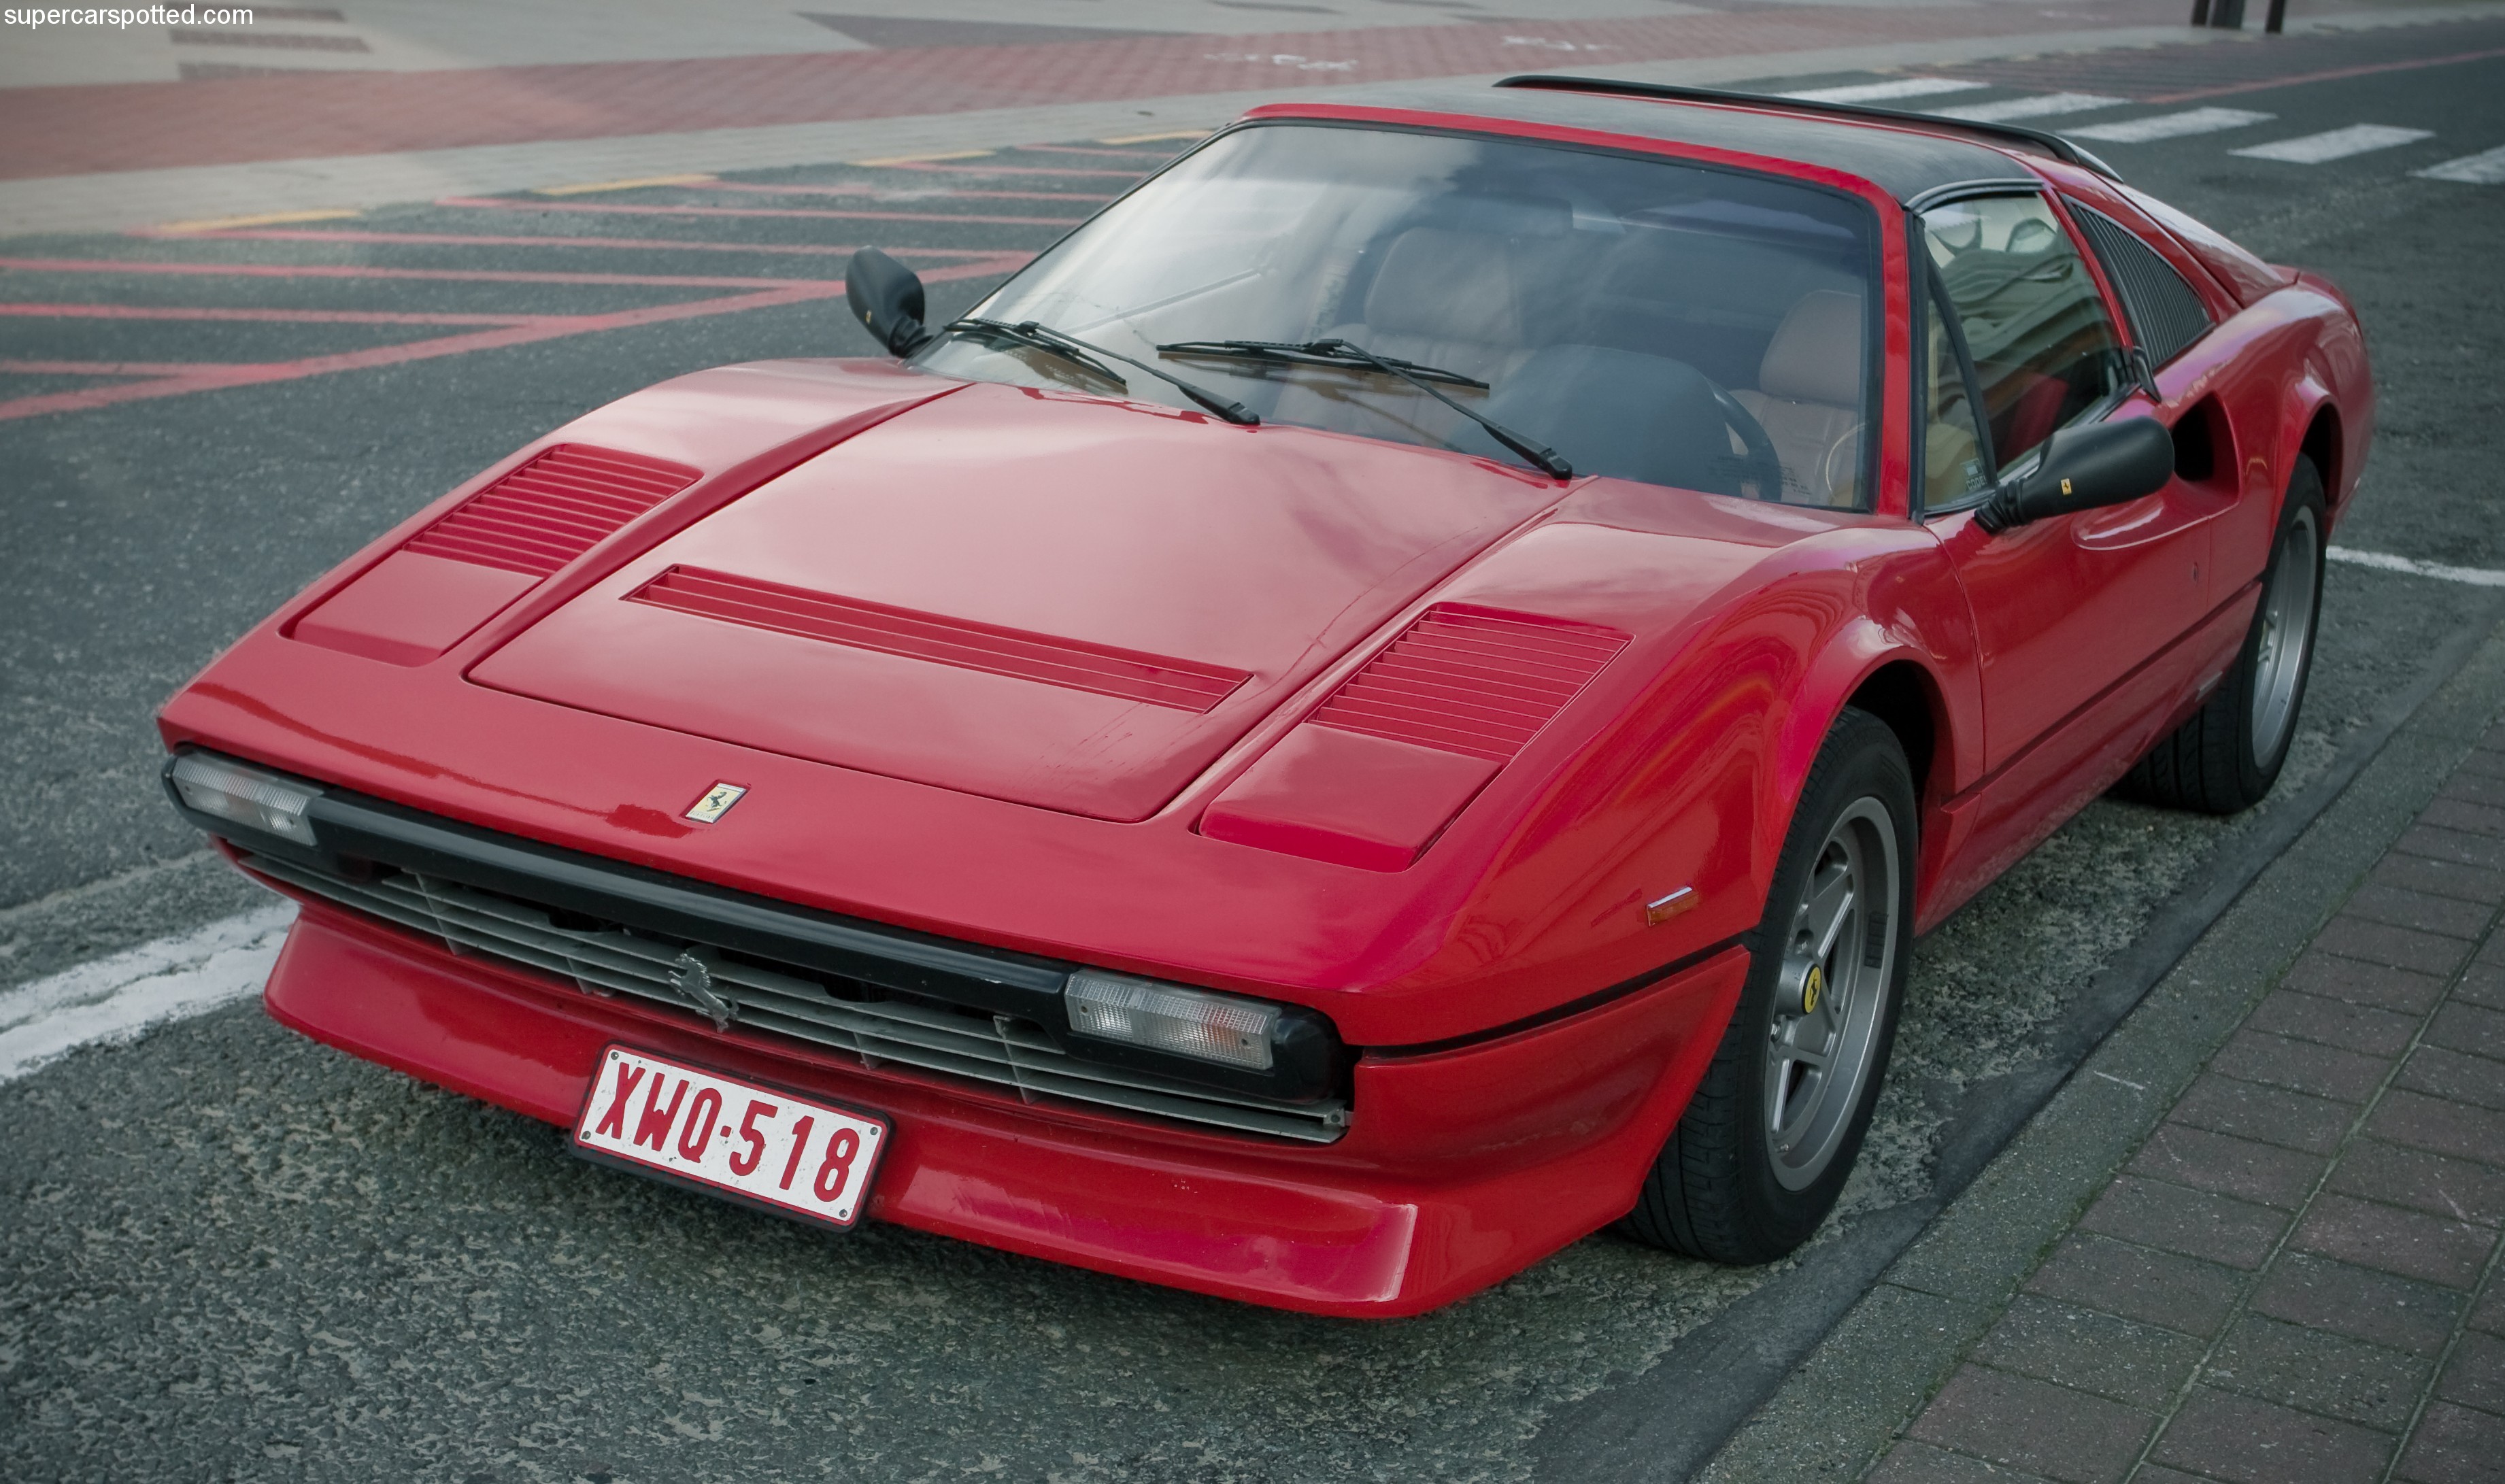 Ferrari 308 Gts Quattrovalvole Wallpapers